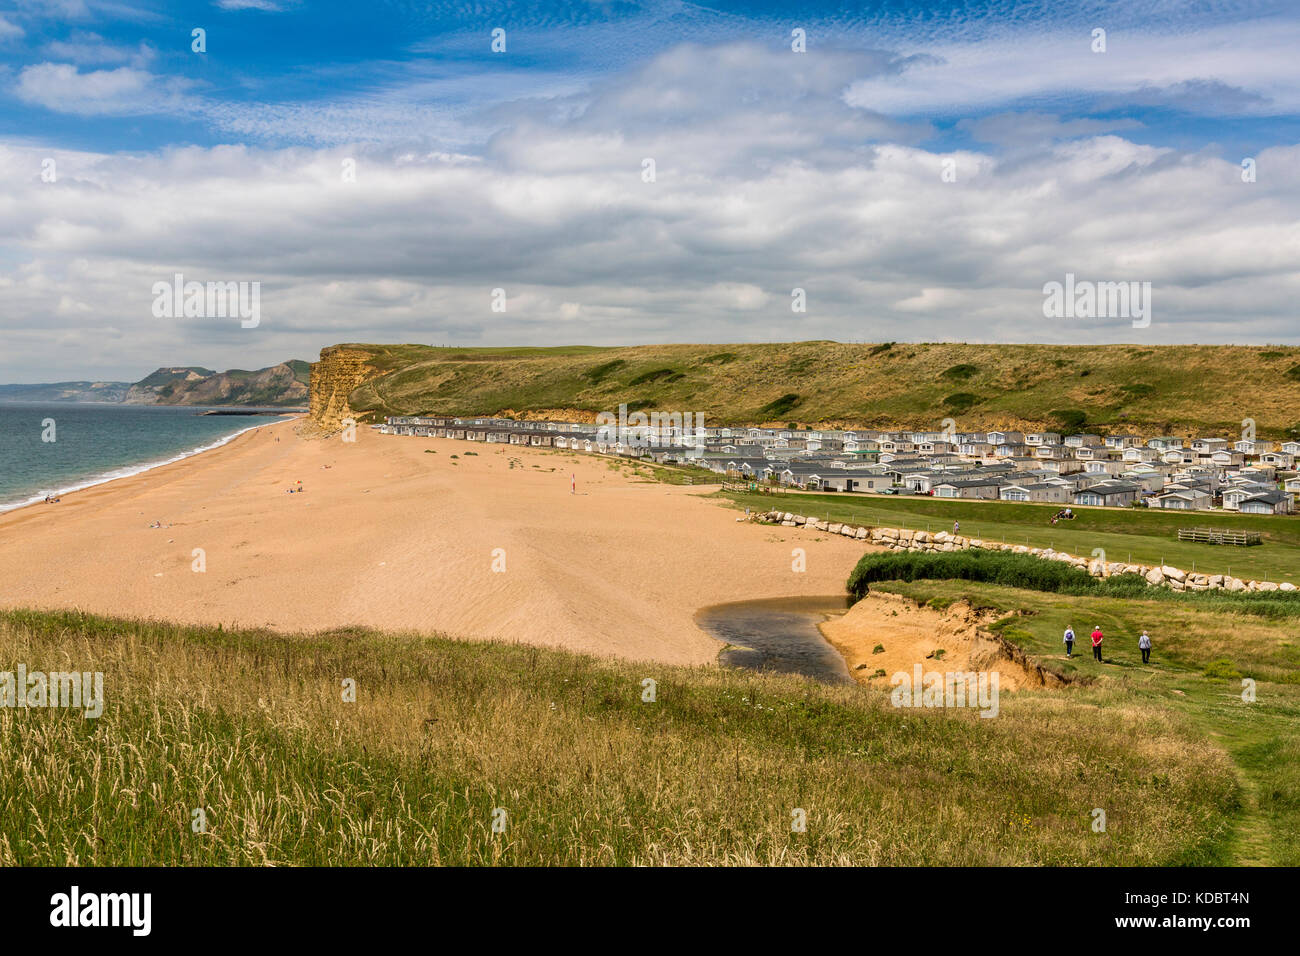 Un énorme site cararvan statique est pratiquement sur la plage à l'eau douce sur le Burton Côte Jurassique, Dorset, England, UK Banque D'Images